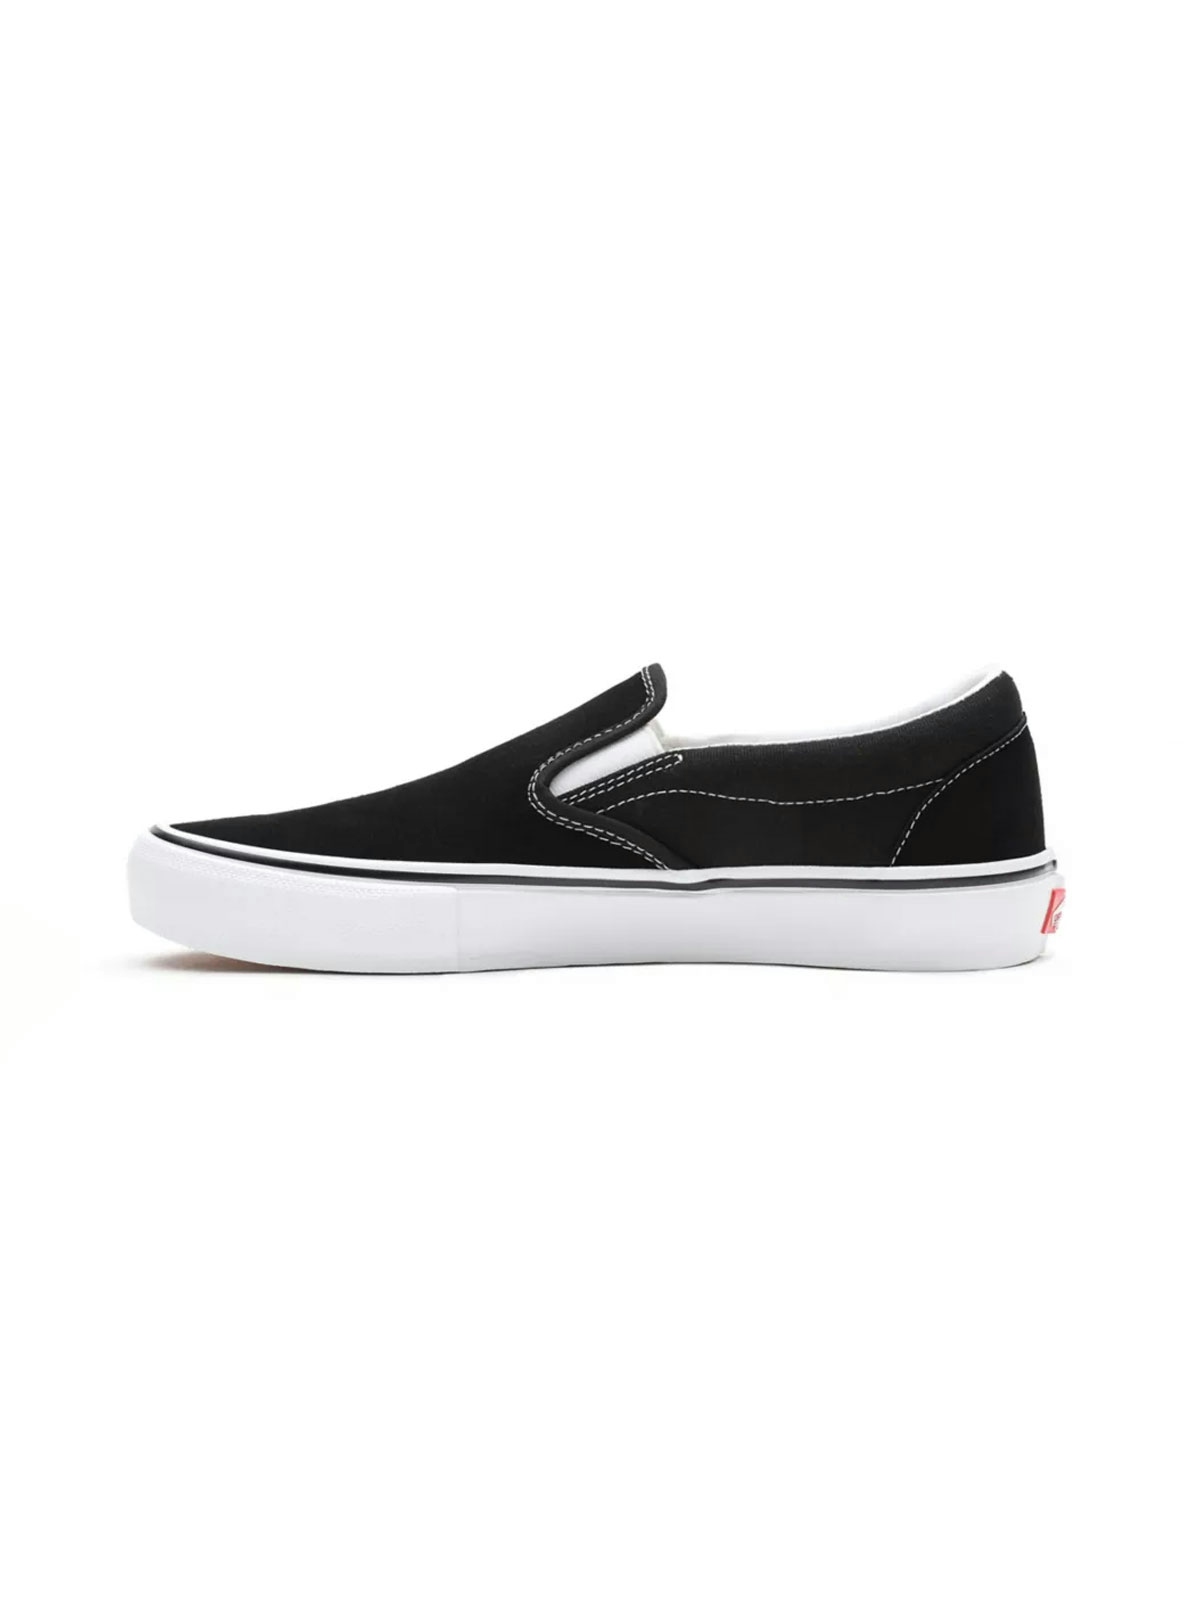 Vans Skate Slip-on Shoes Black/White 3